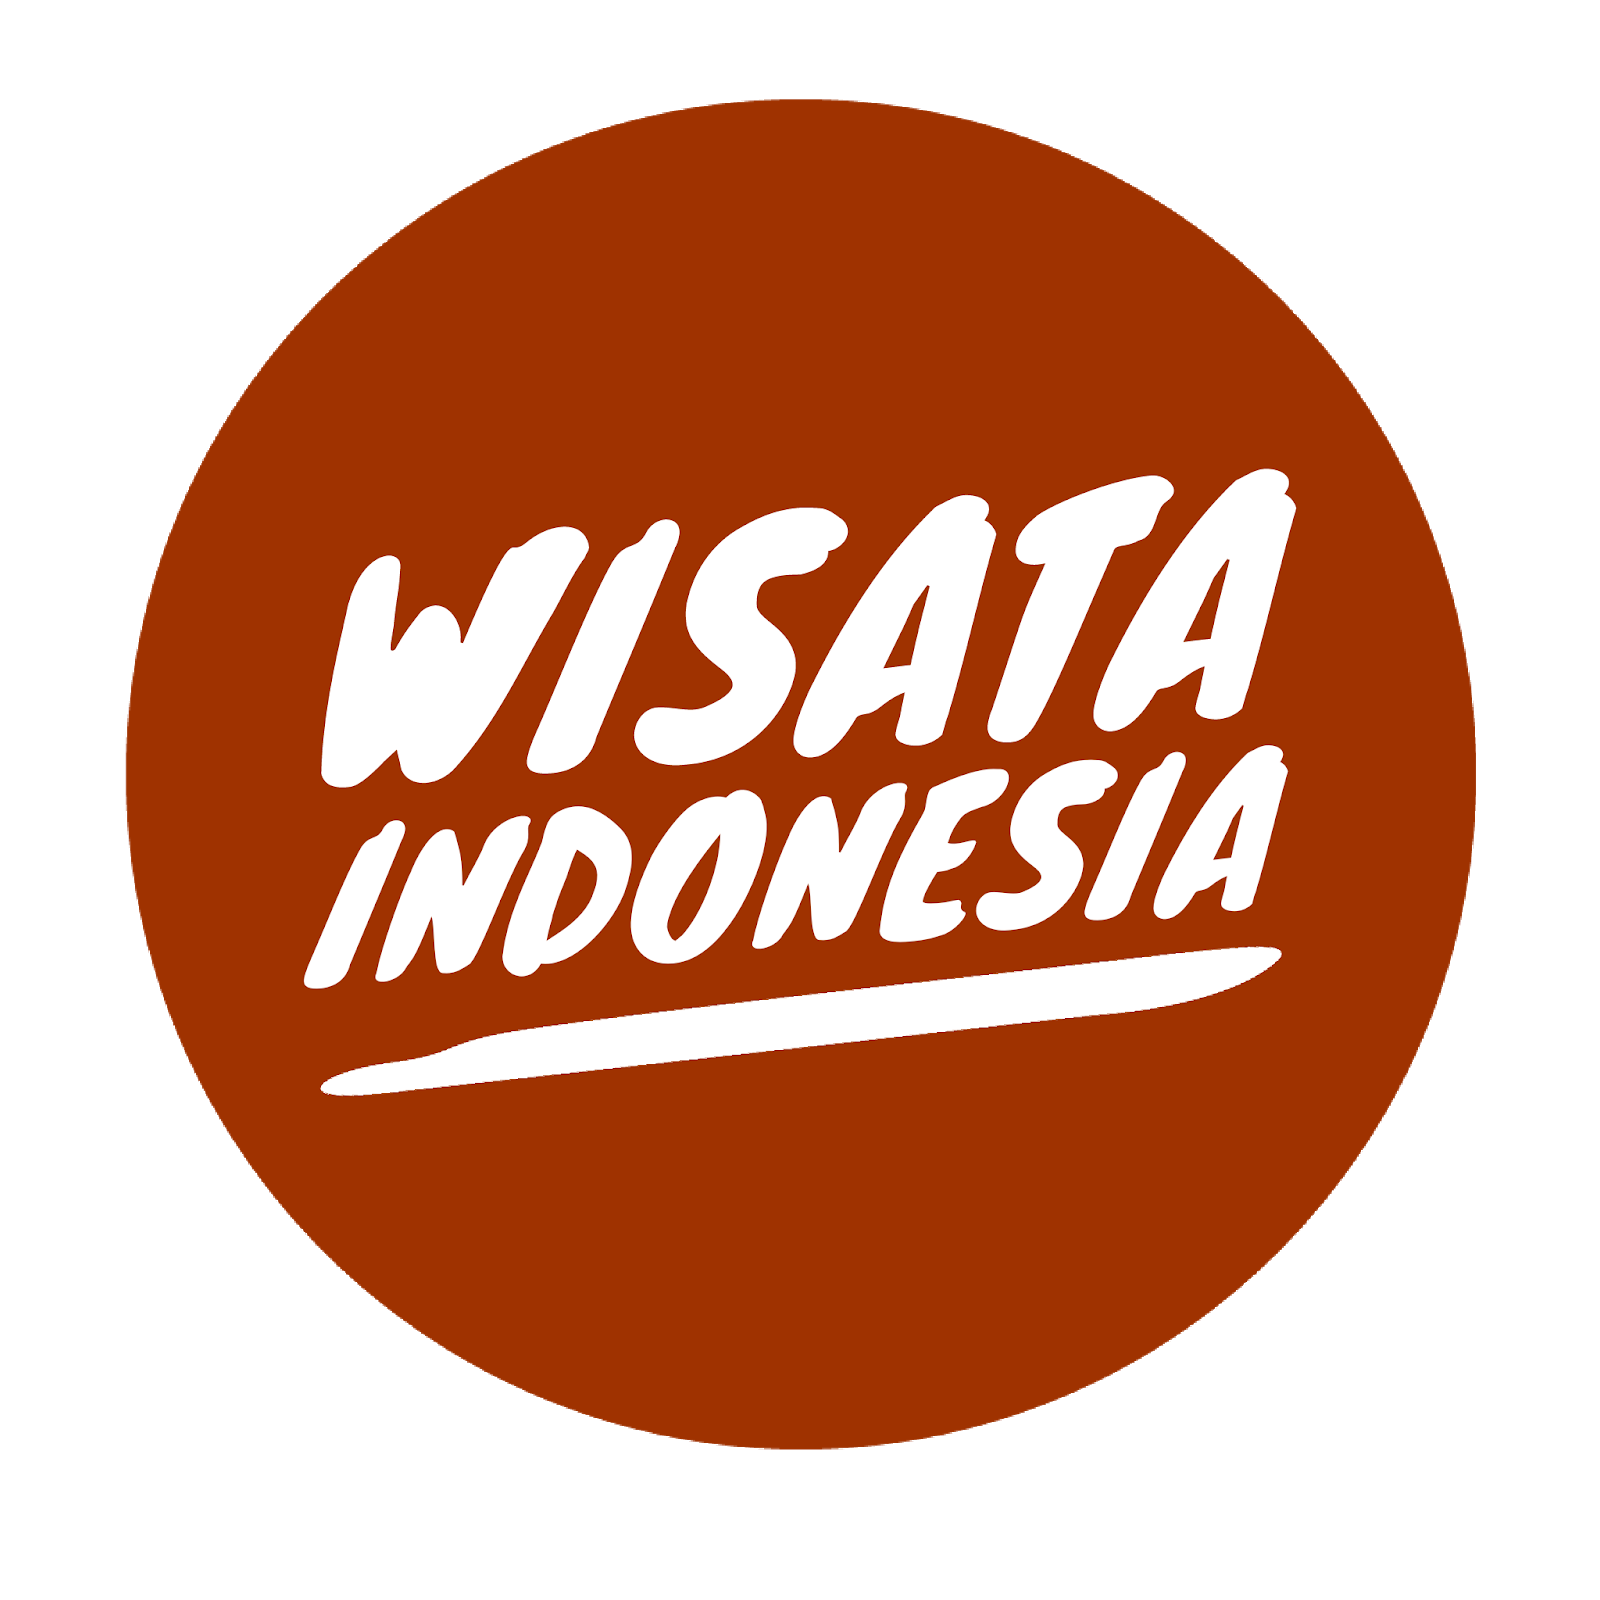 WISATA INDONESIA